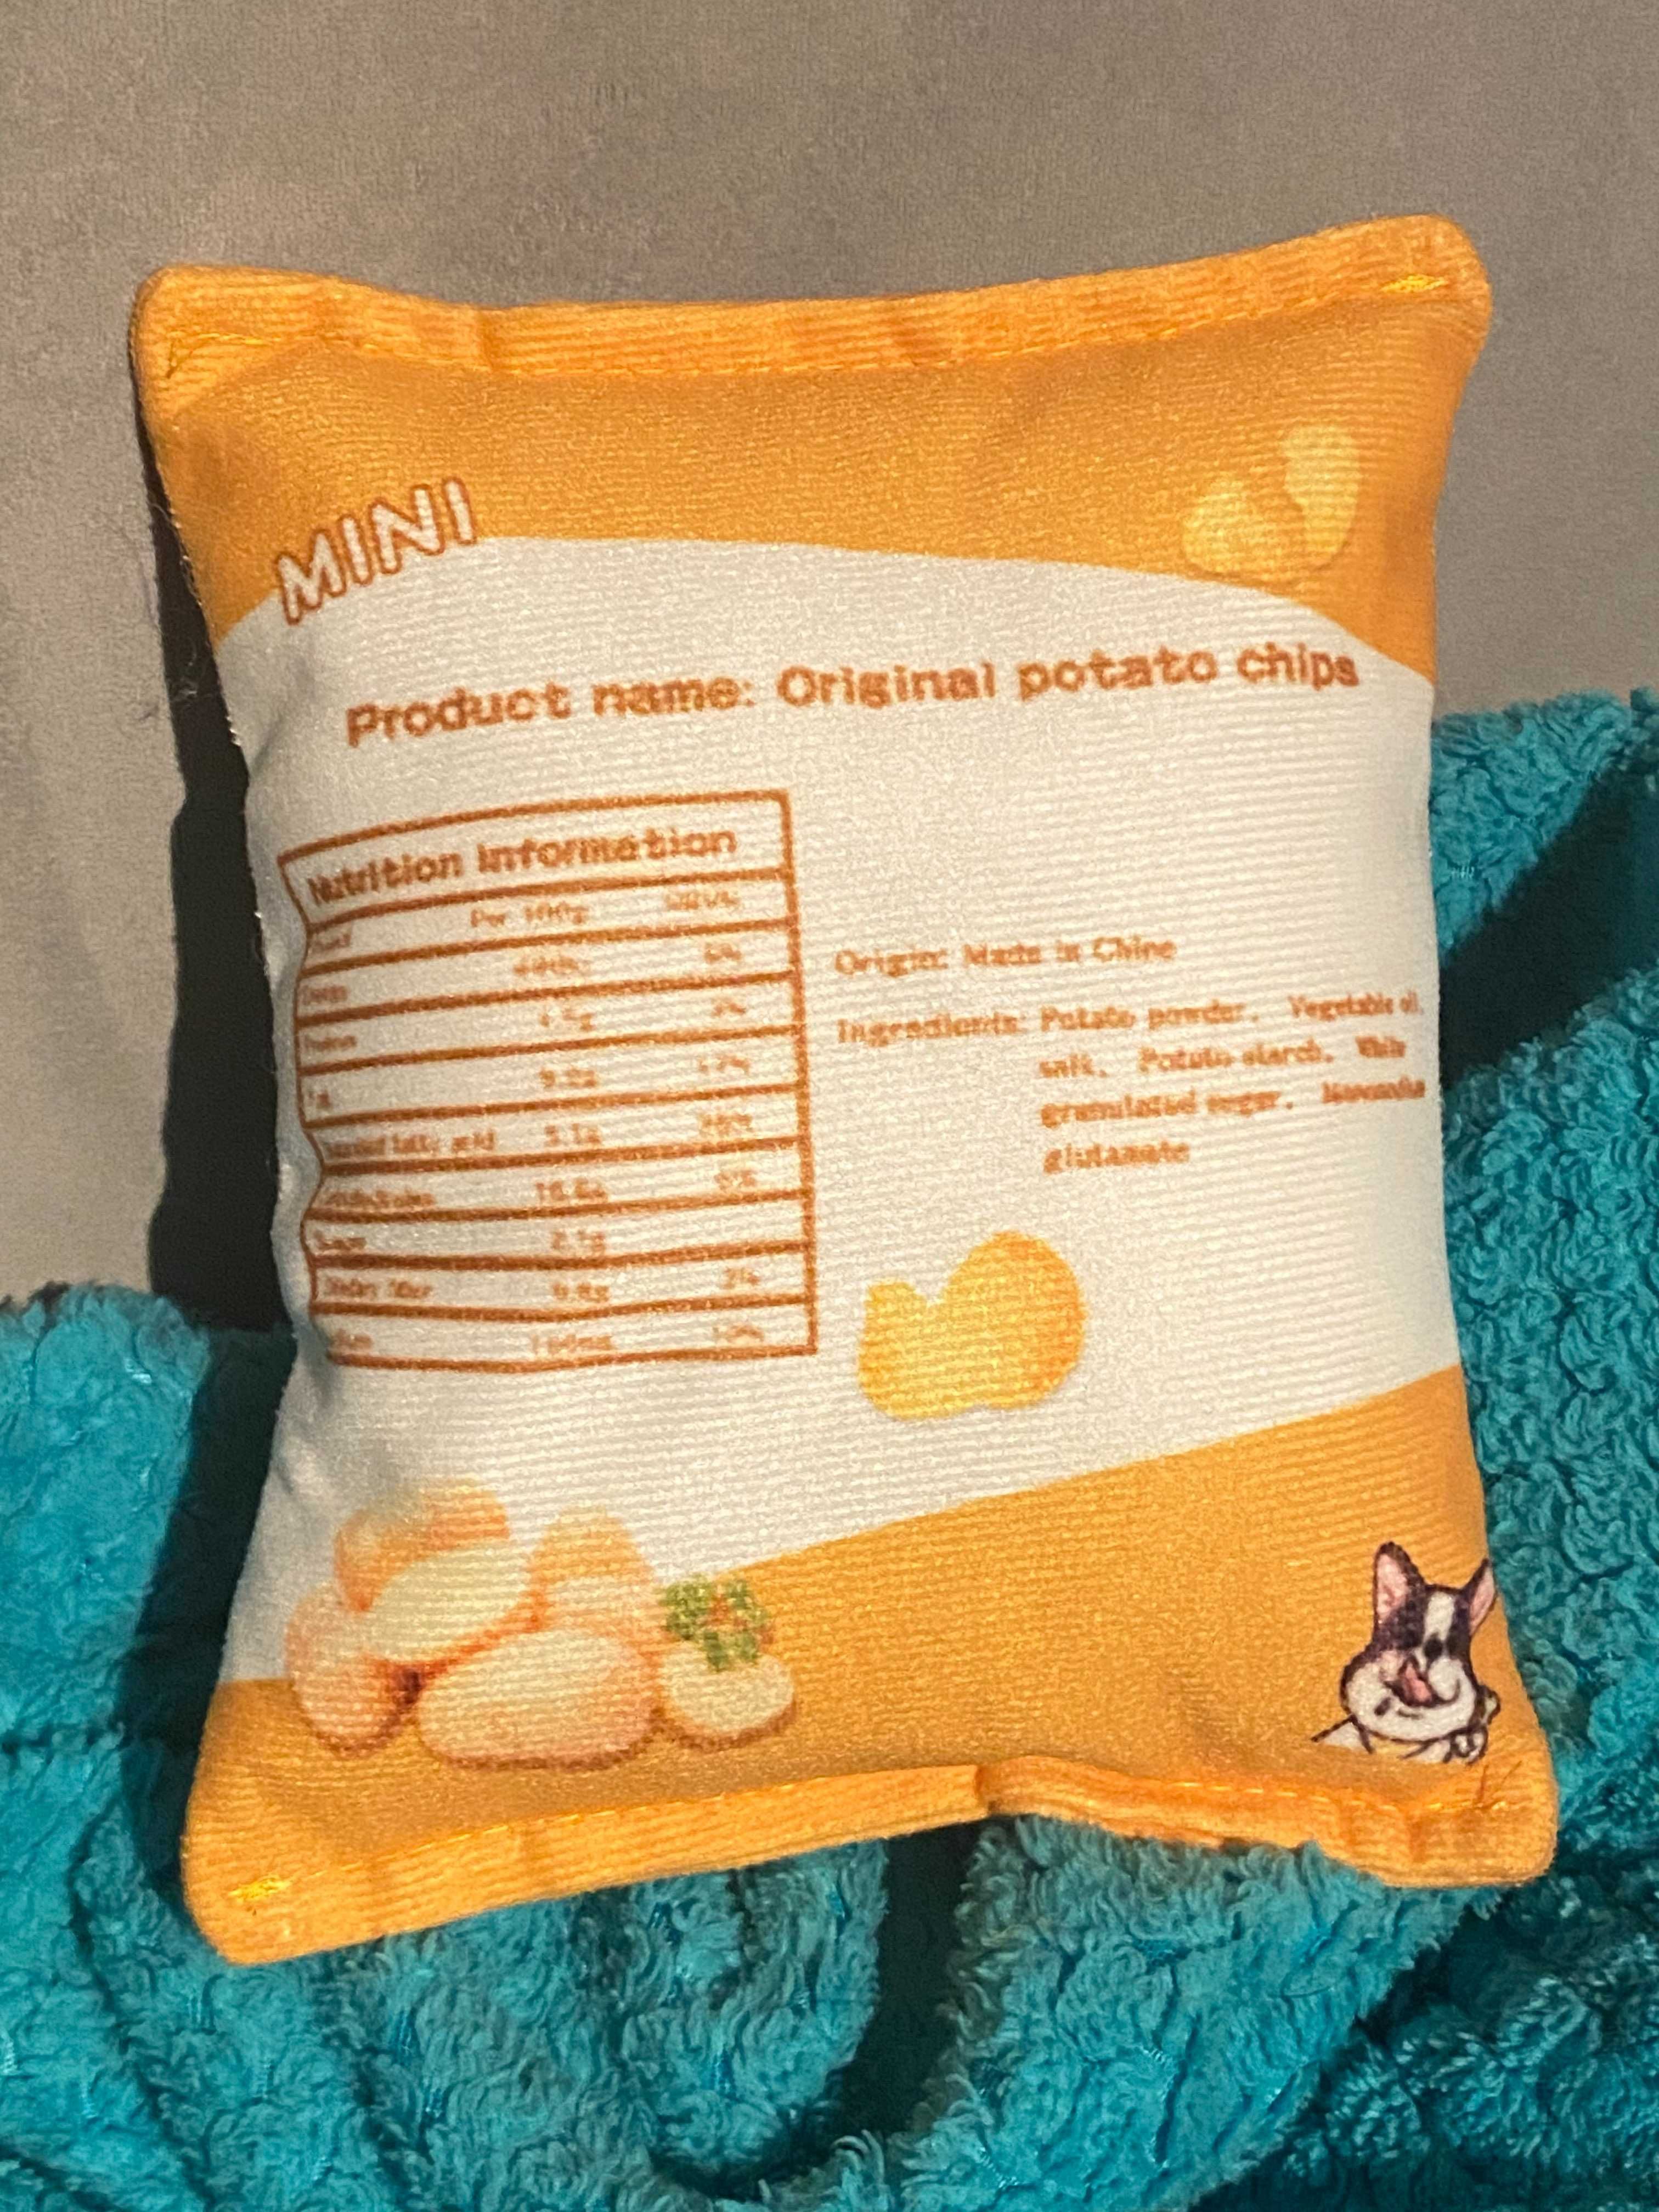 Piszczący Pluszak zabawka czipsy Potato chips 17cm